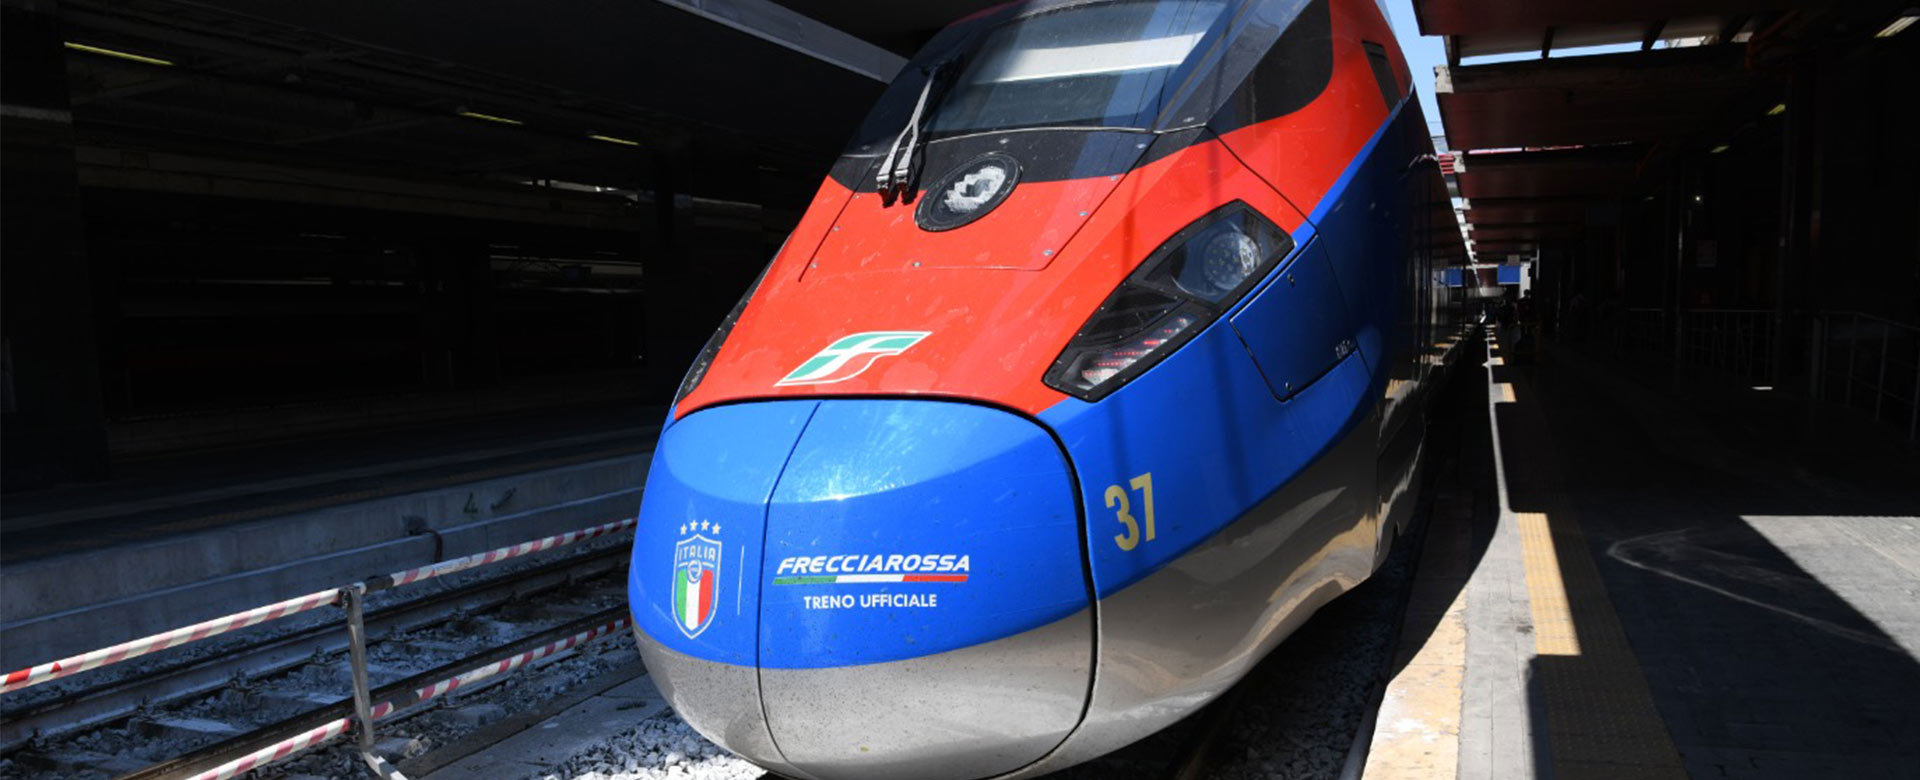 Il Frecciarossa, treno ufficiale della Nazionale, tinto d'azzurro in occasione di Euro 2020